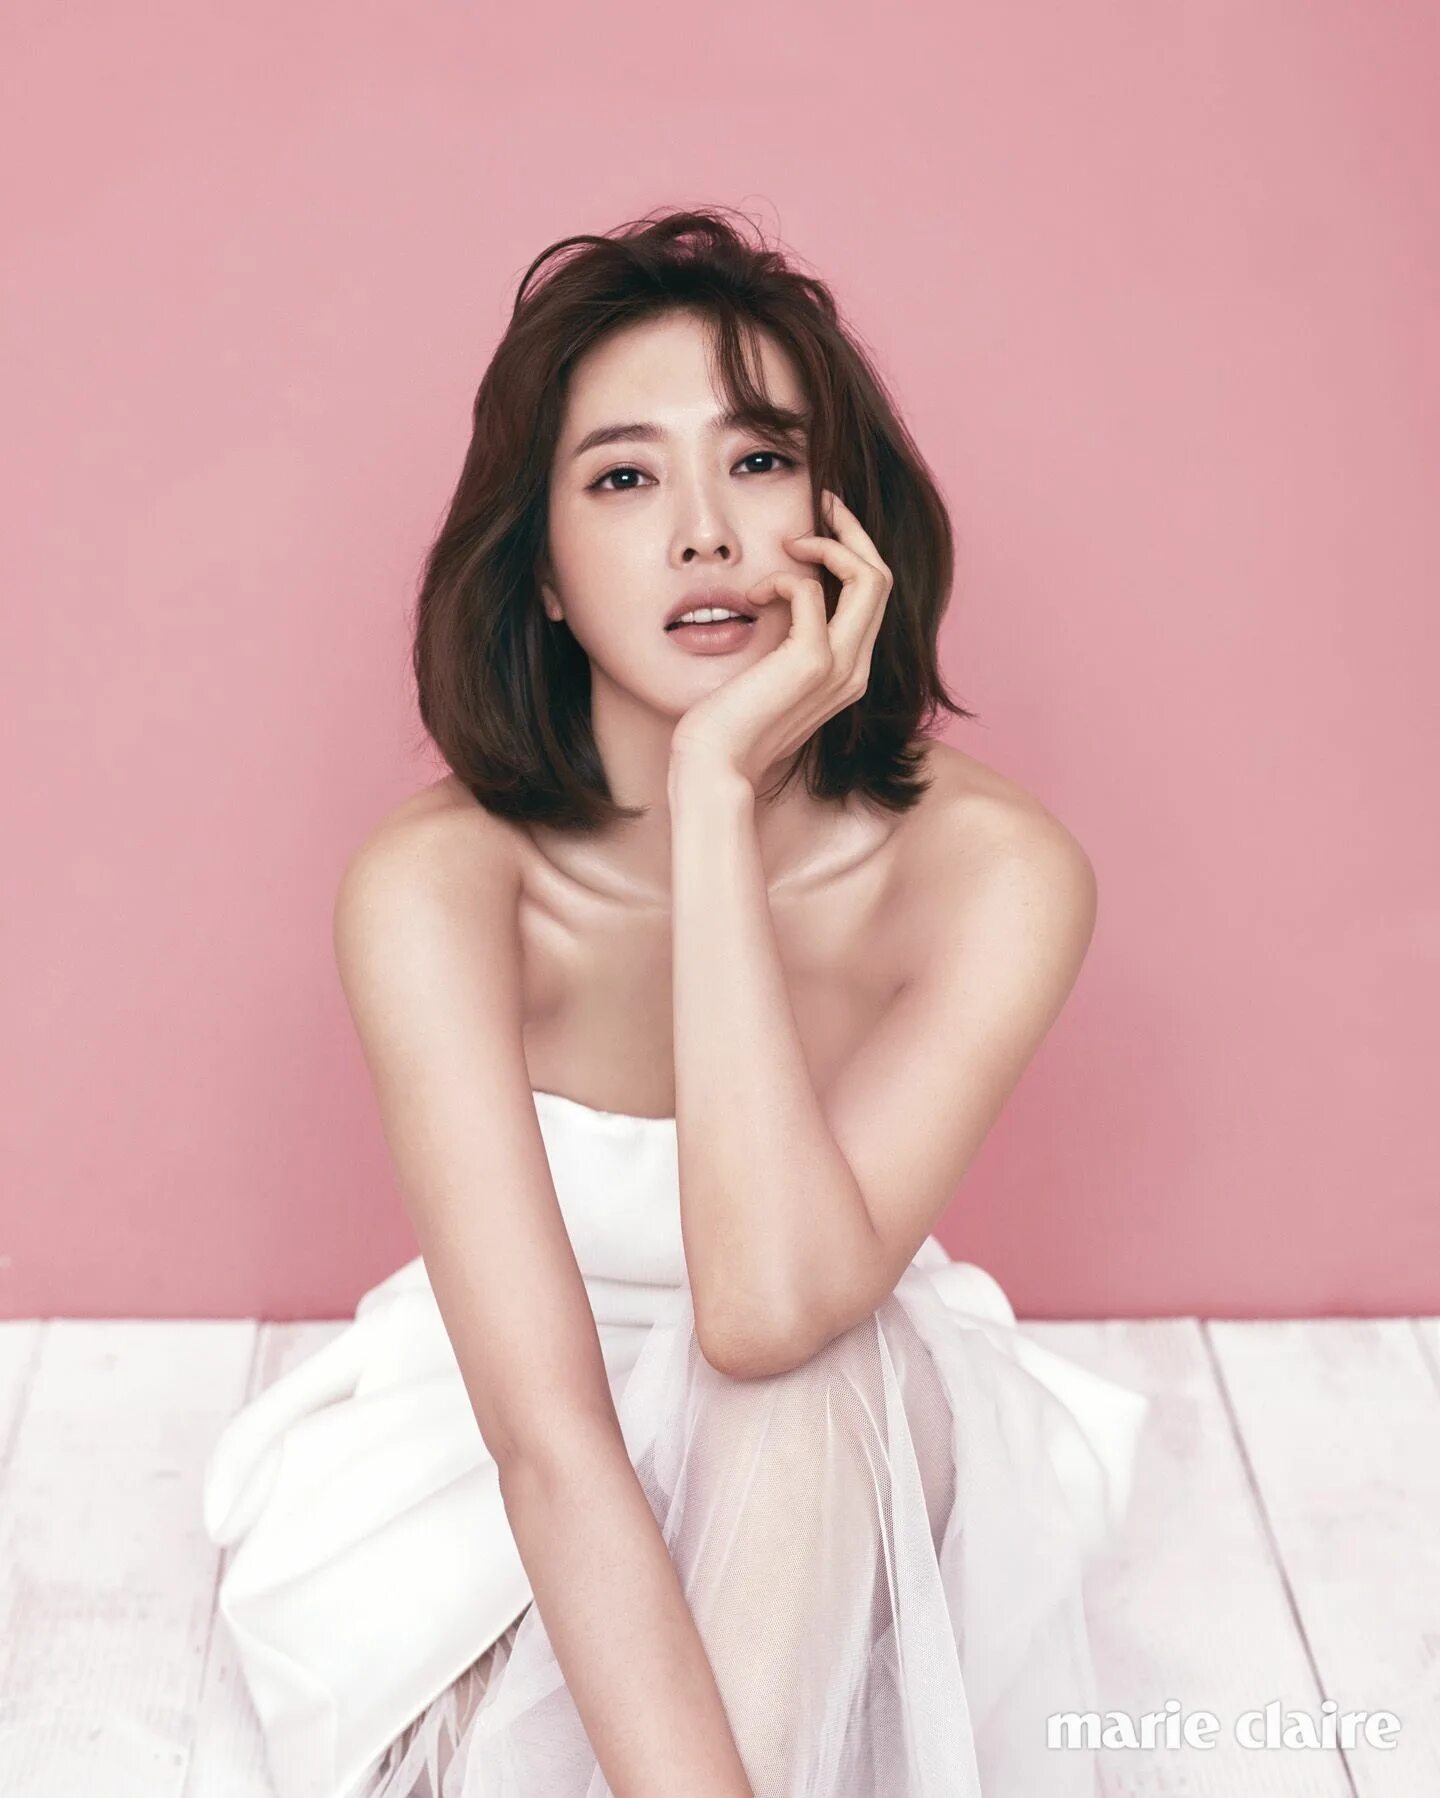 Wang Ji Hye. Ван Чжи хё. Ван Чжи вон. Ван Джи-Хе корейская актриса. Пак мин дже